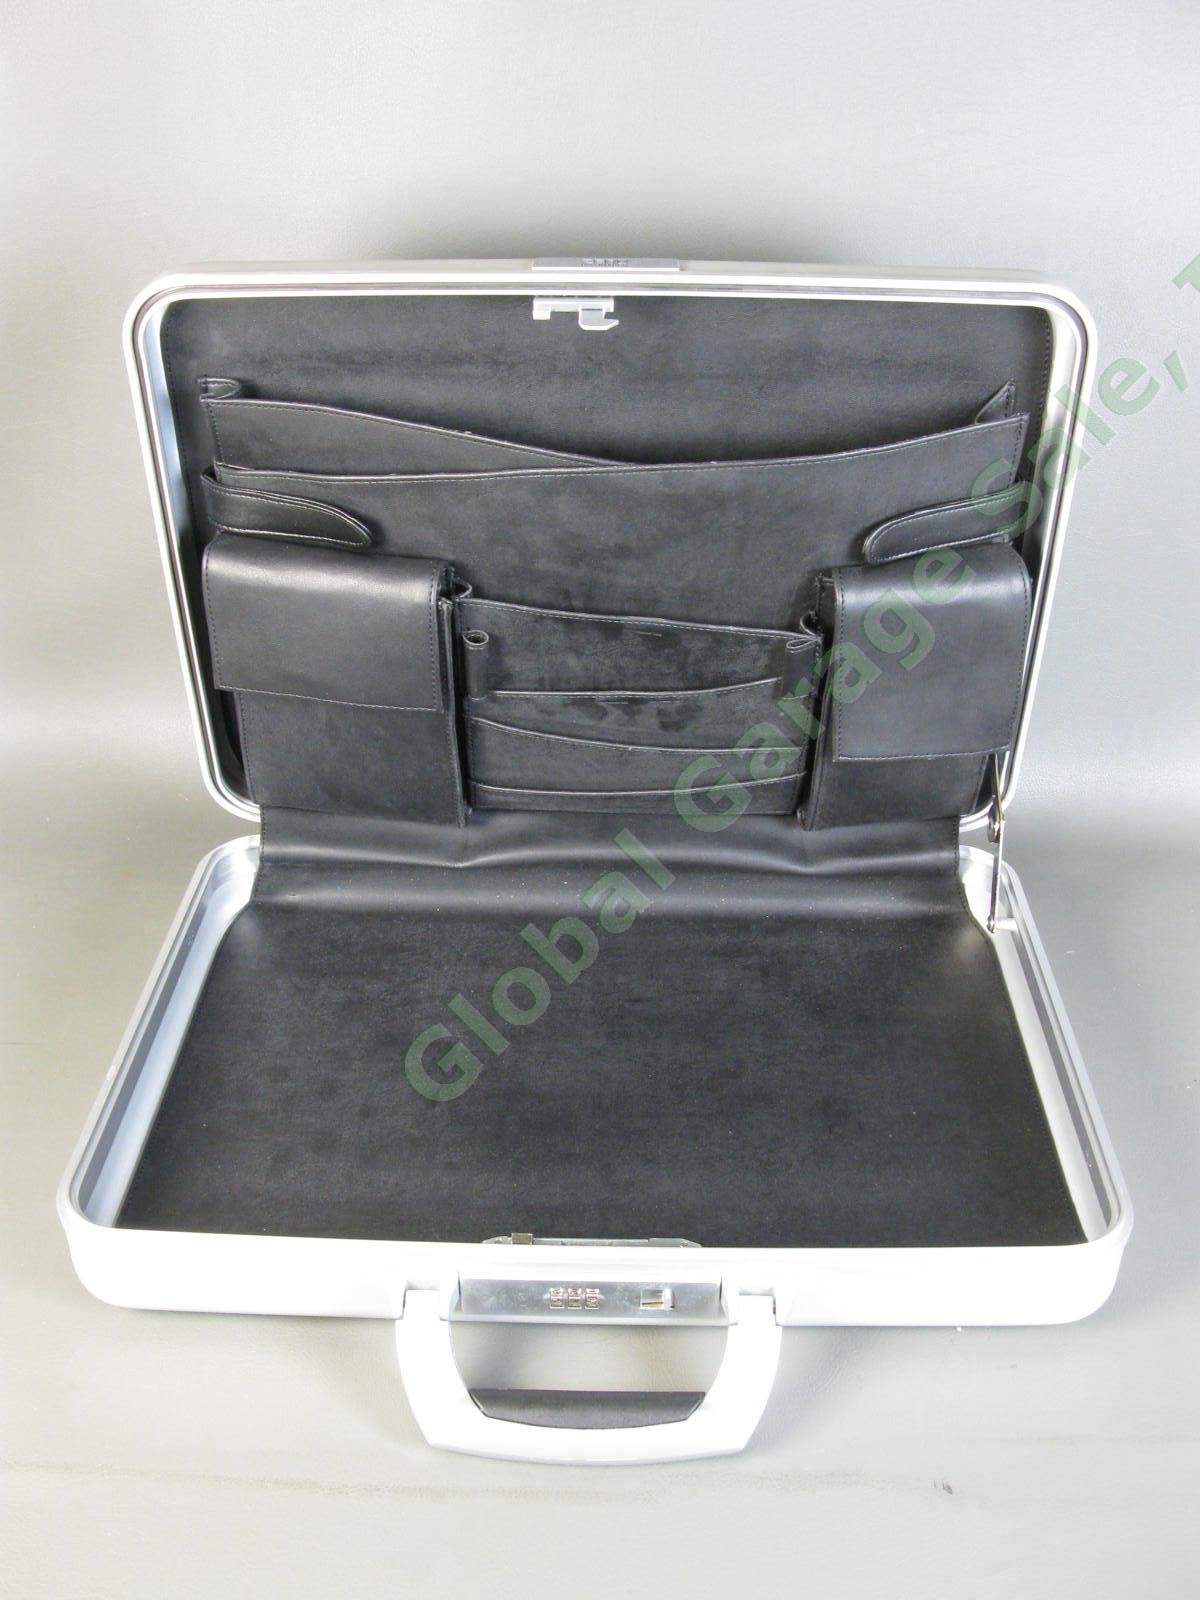 Halliburton ZERO Aluminum Briefcase 18"x13"x3" Combo Lock Excellent Condition NR 7